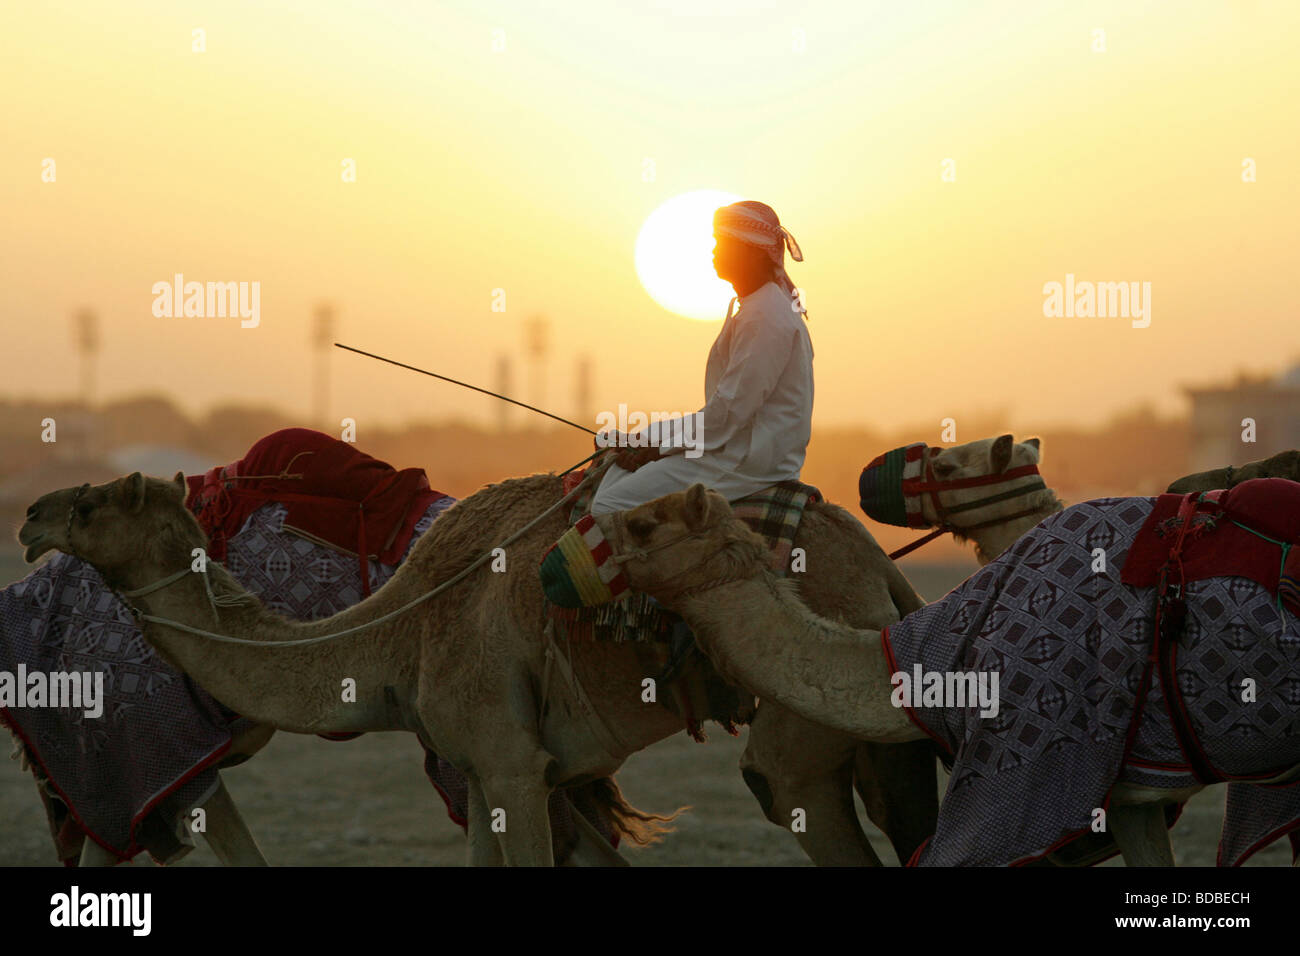 Man leading a caravan through the desert at dawn Stock Photo